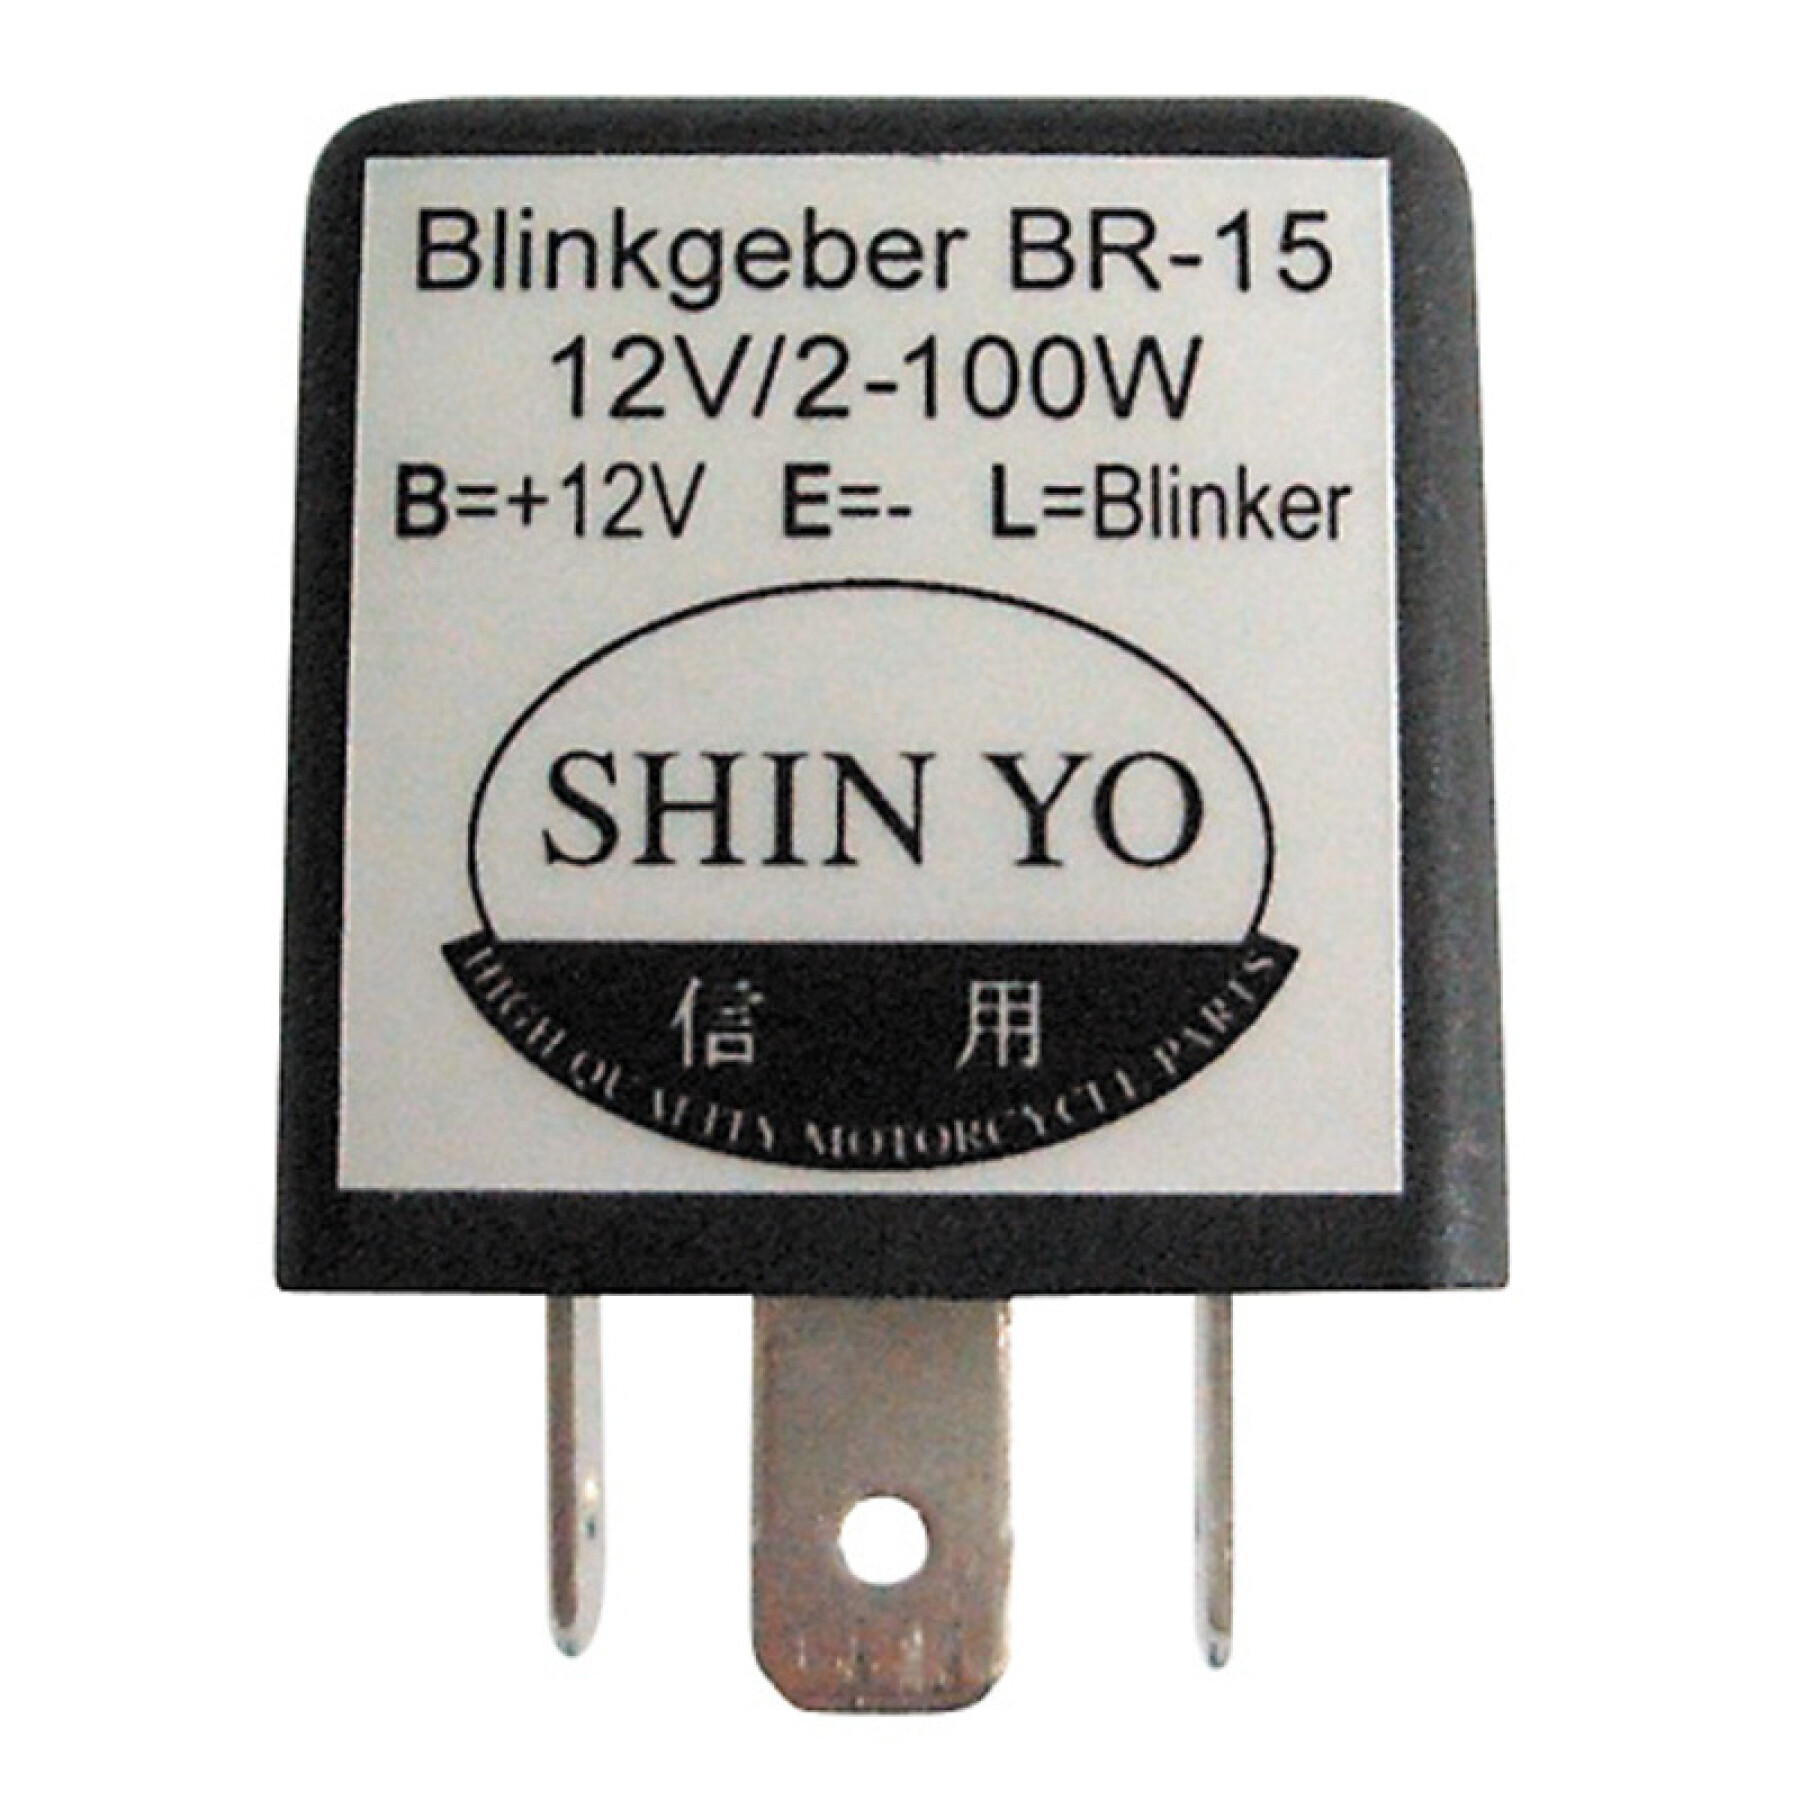 Blinkrelais Shinyo Sy-02, 3 Pôles, 12 Vdc, 1-100 Watt